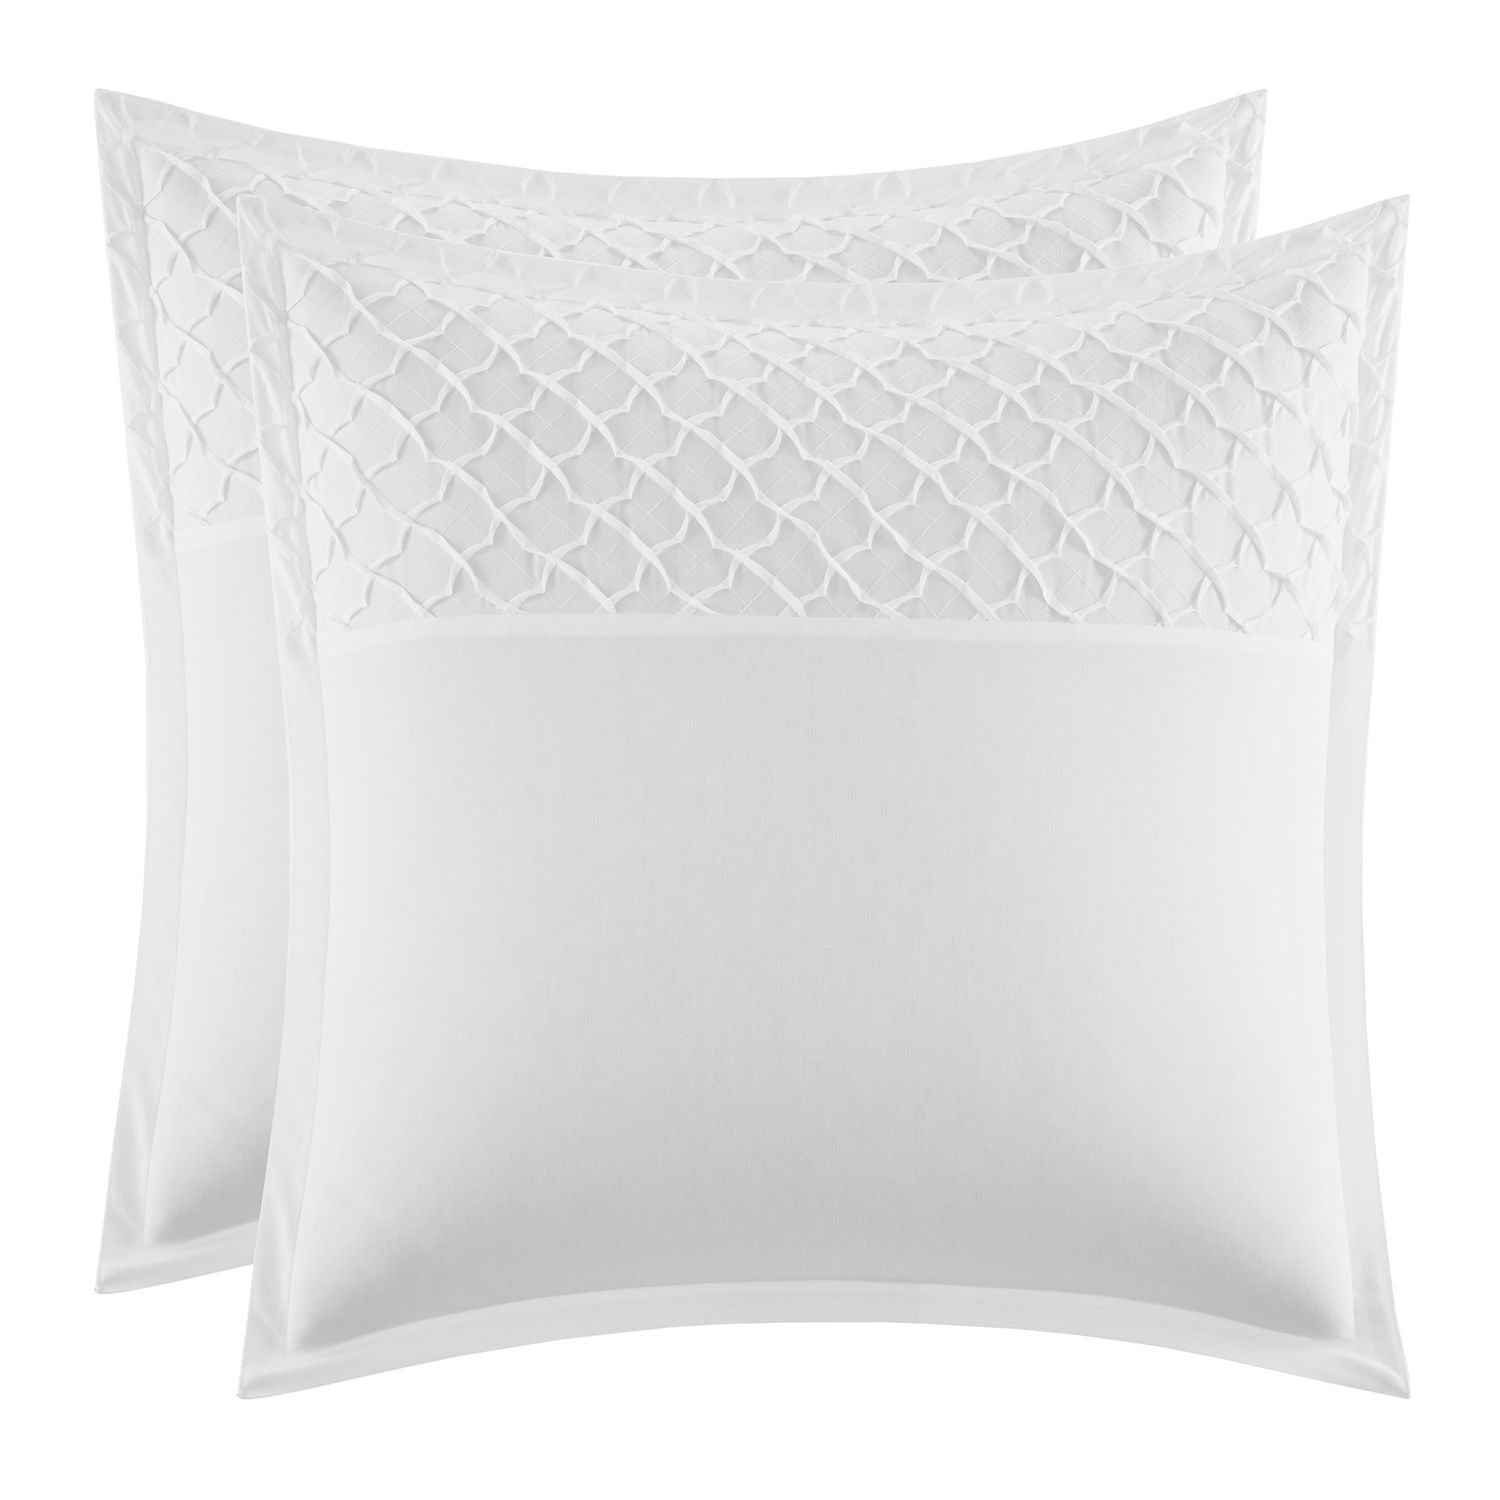 White Euro Pillow Pillow Shams 